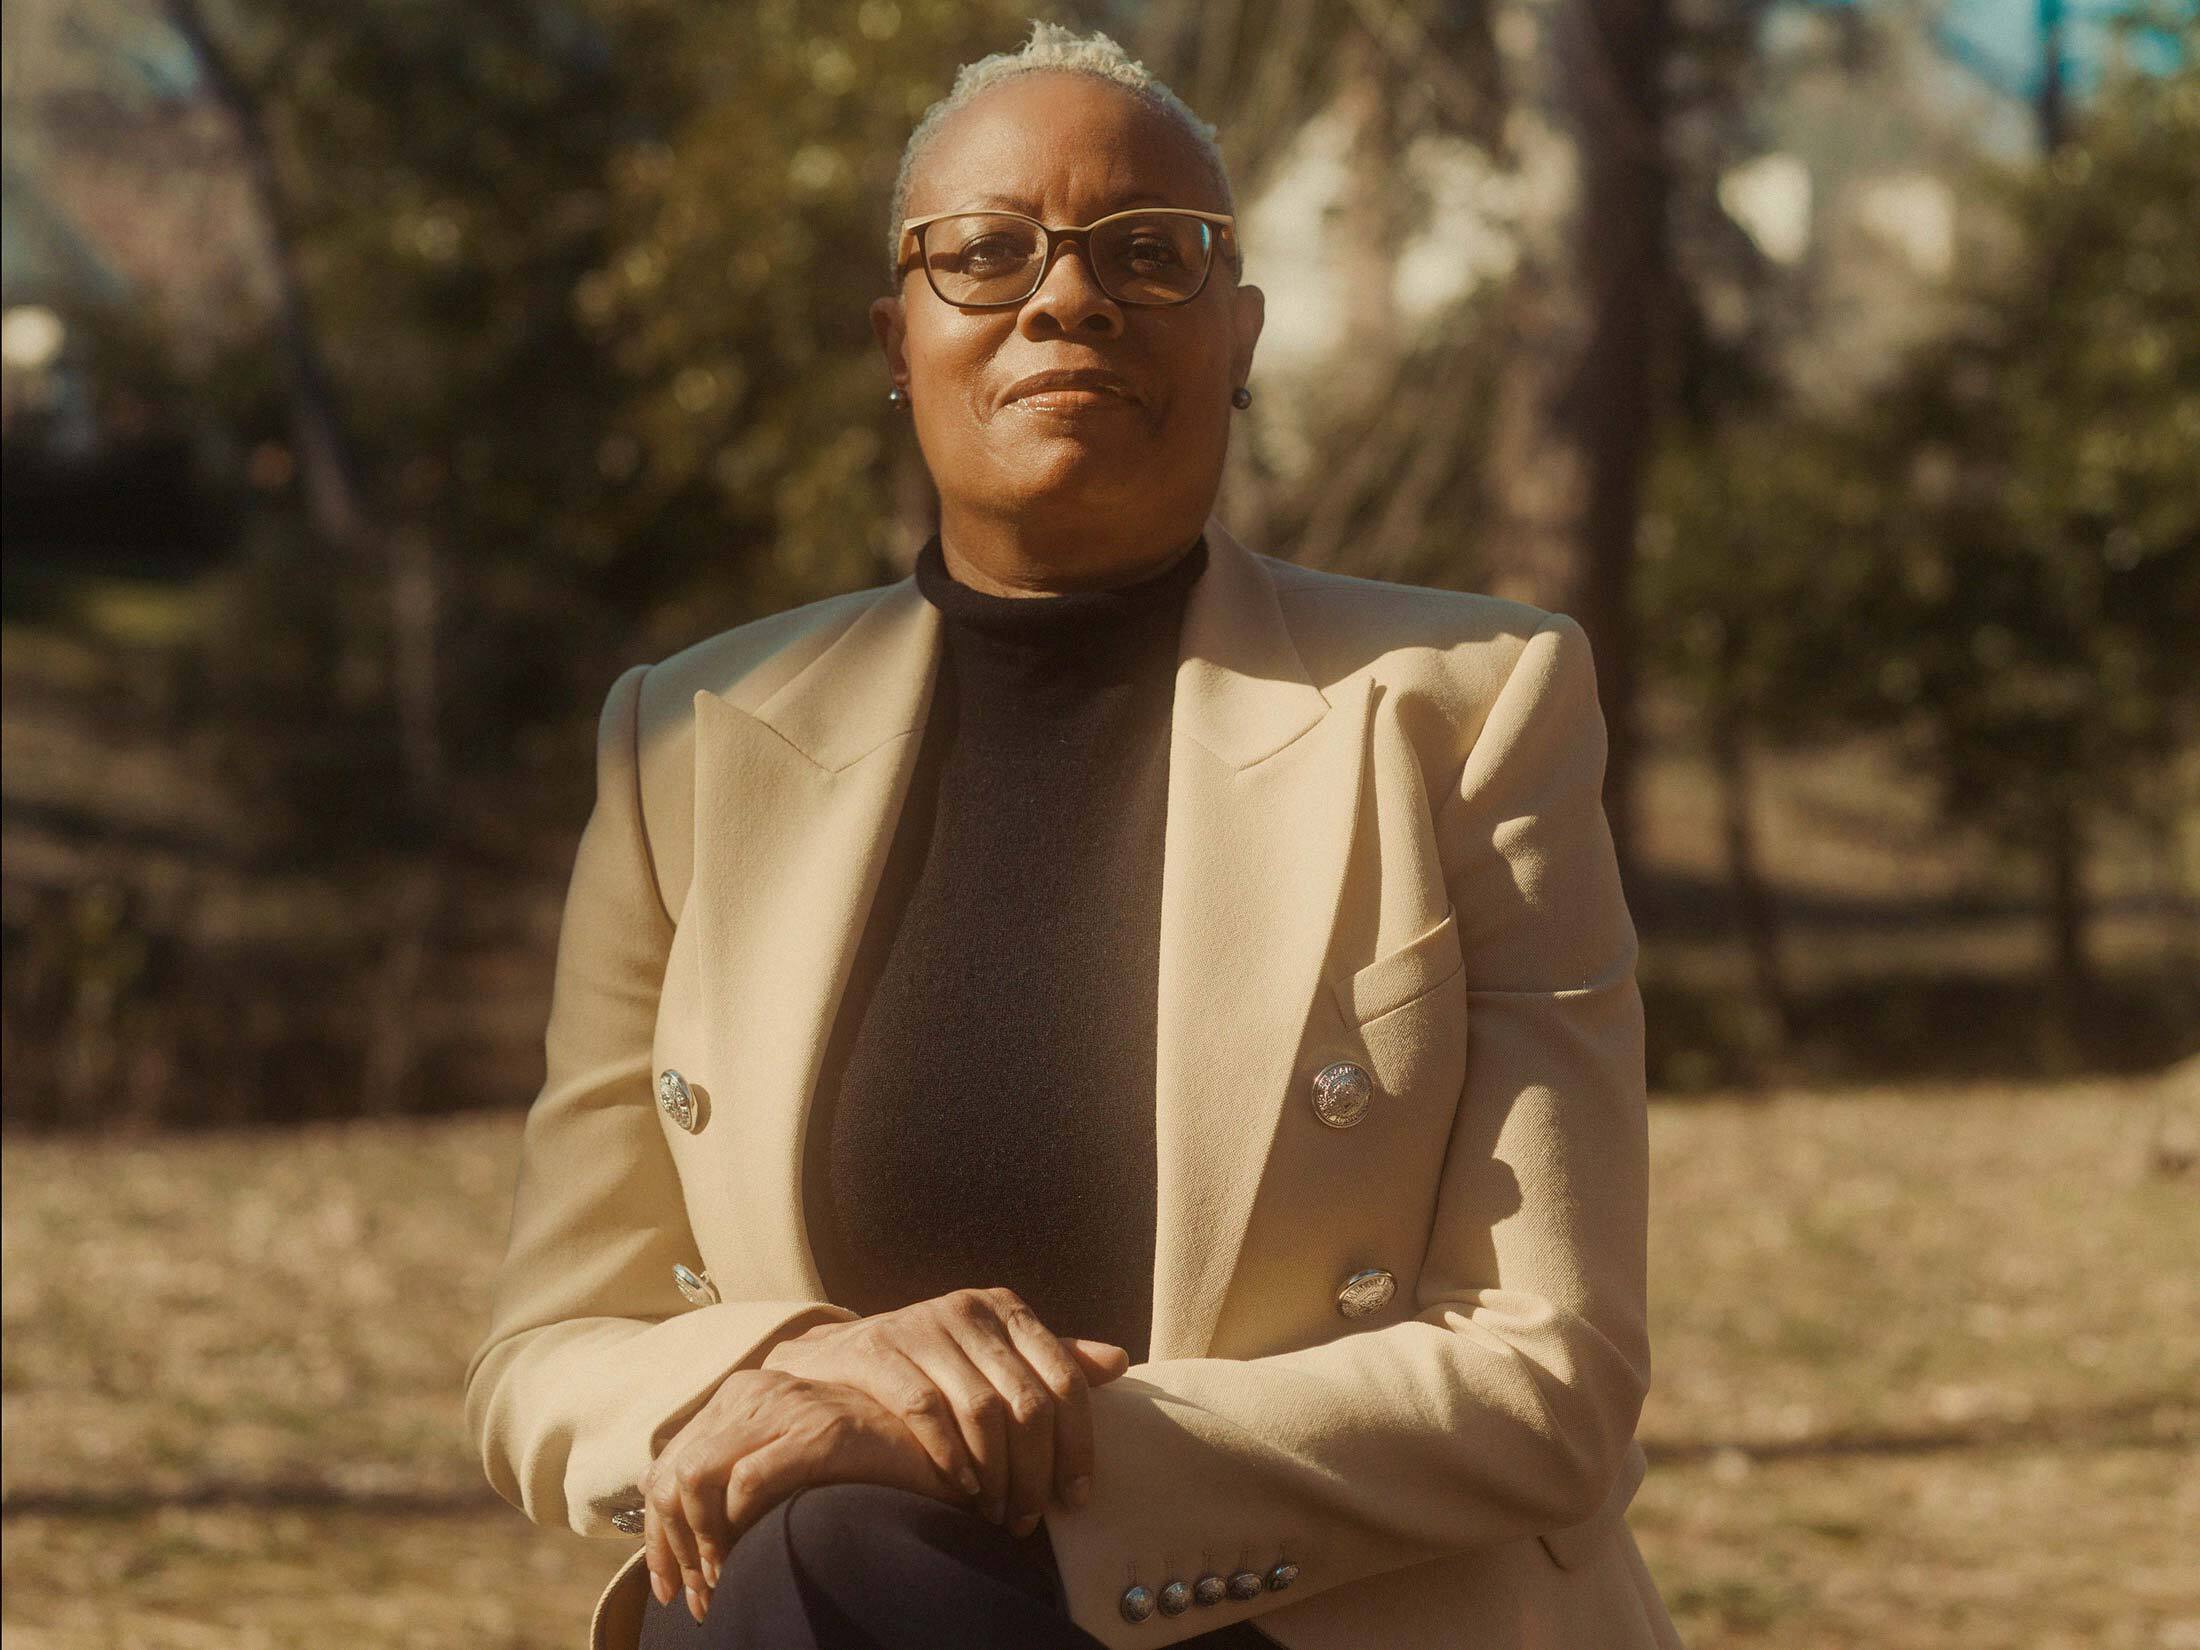 America's Tax Code Leaves Black People Behind: Dorothy Brown